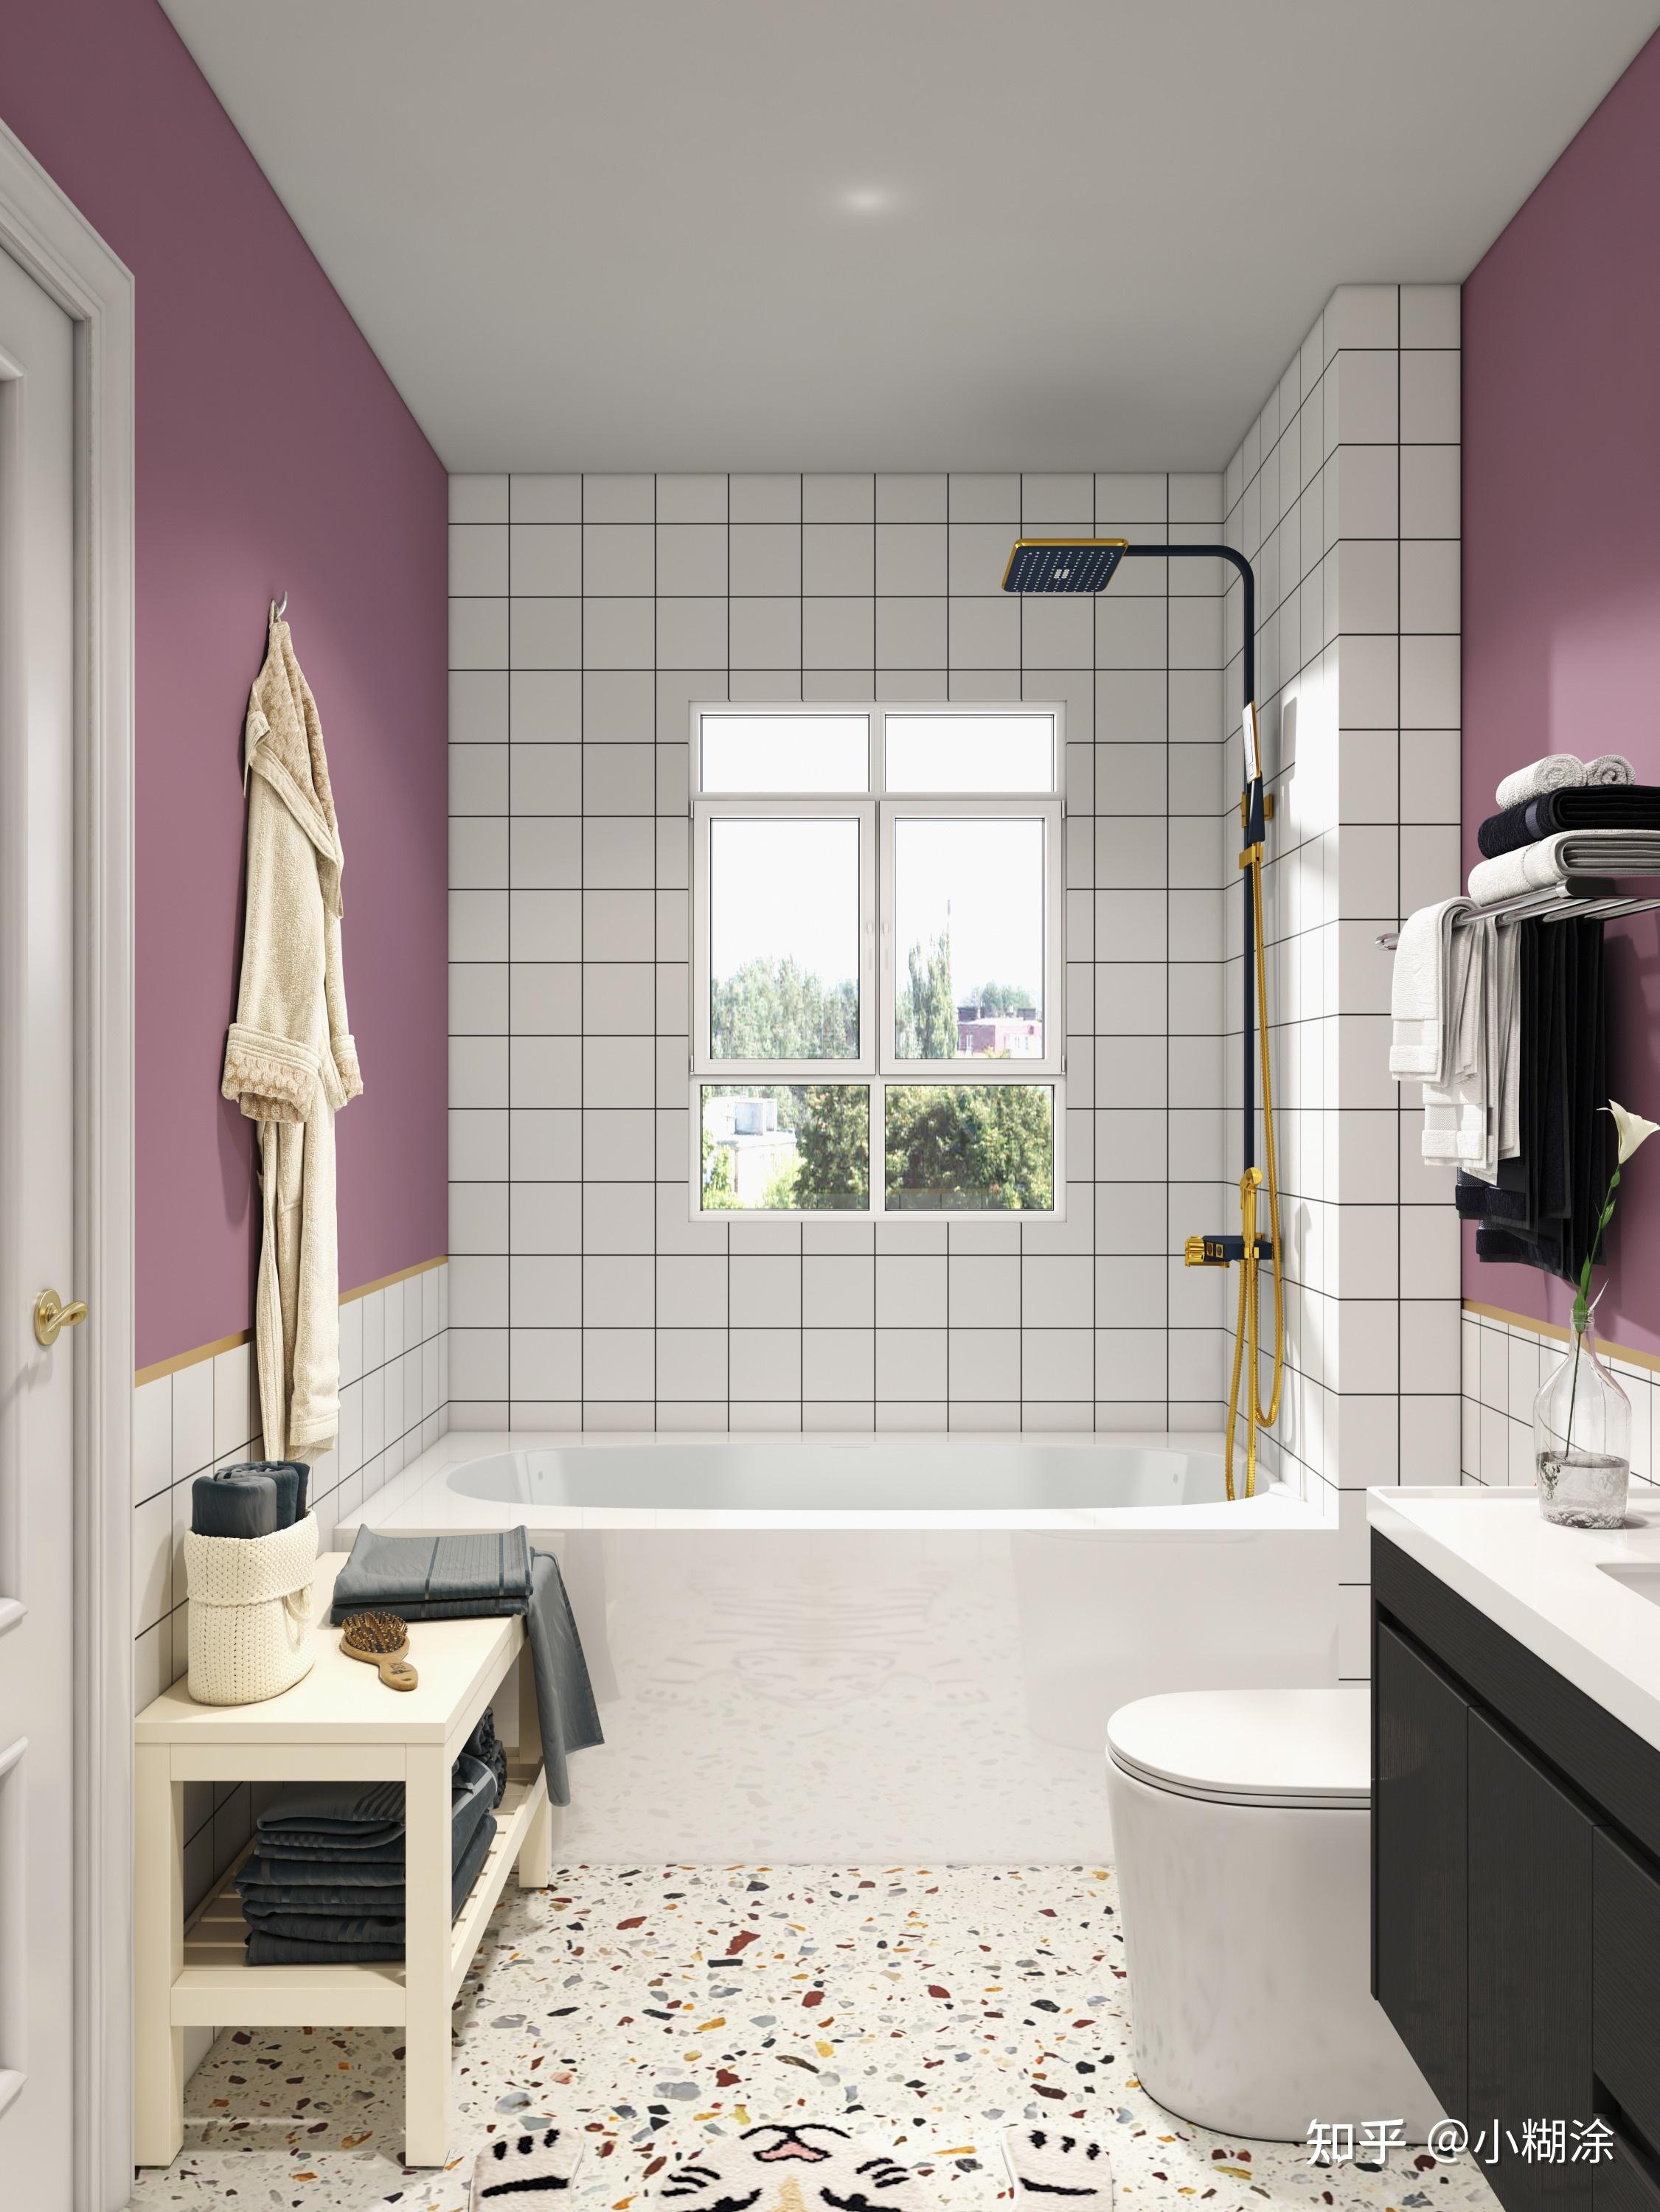 微醺紫罗兰浴室独享简约温馨的泡澡时光